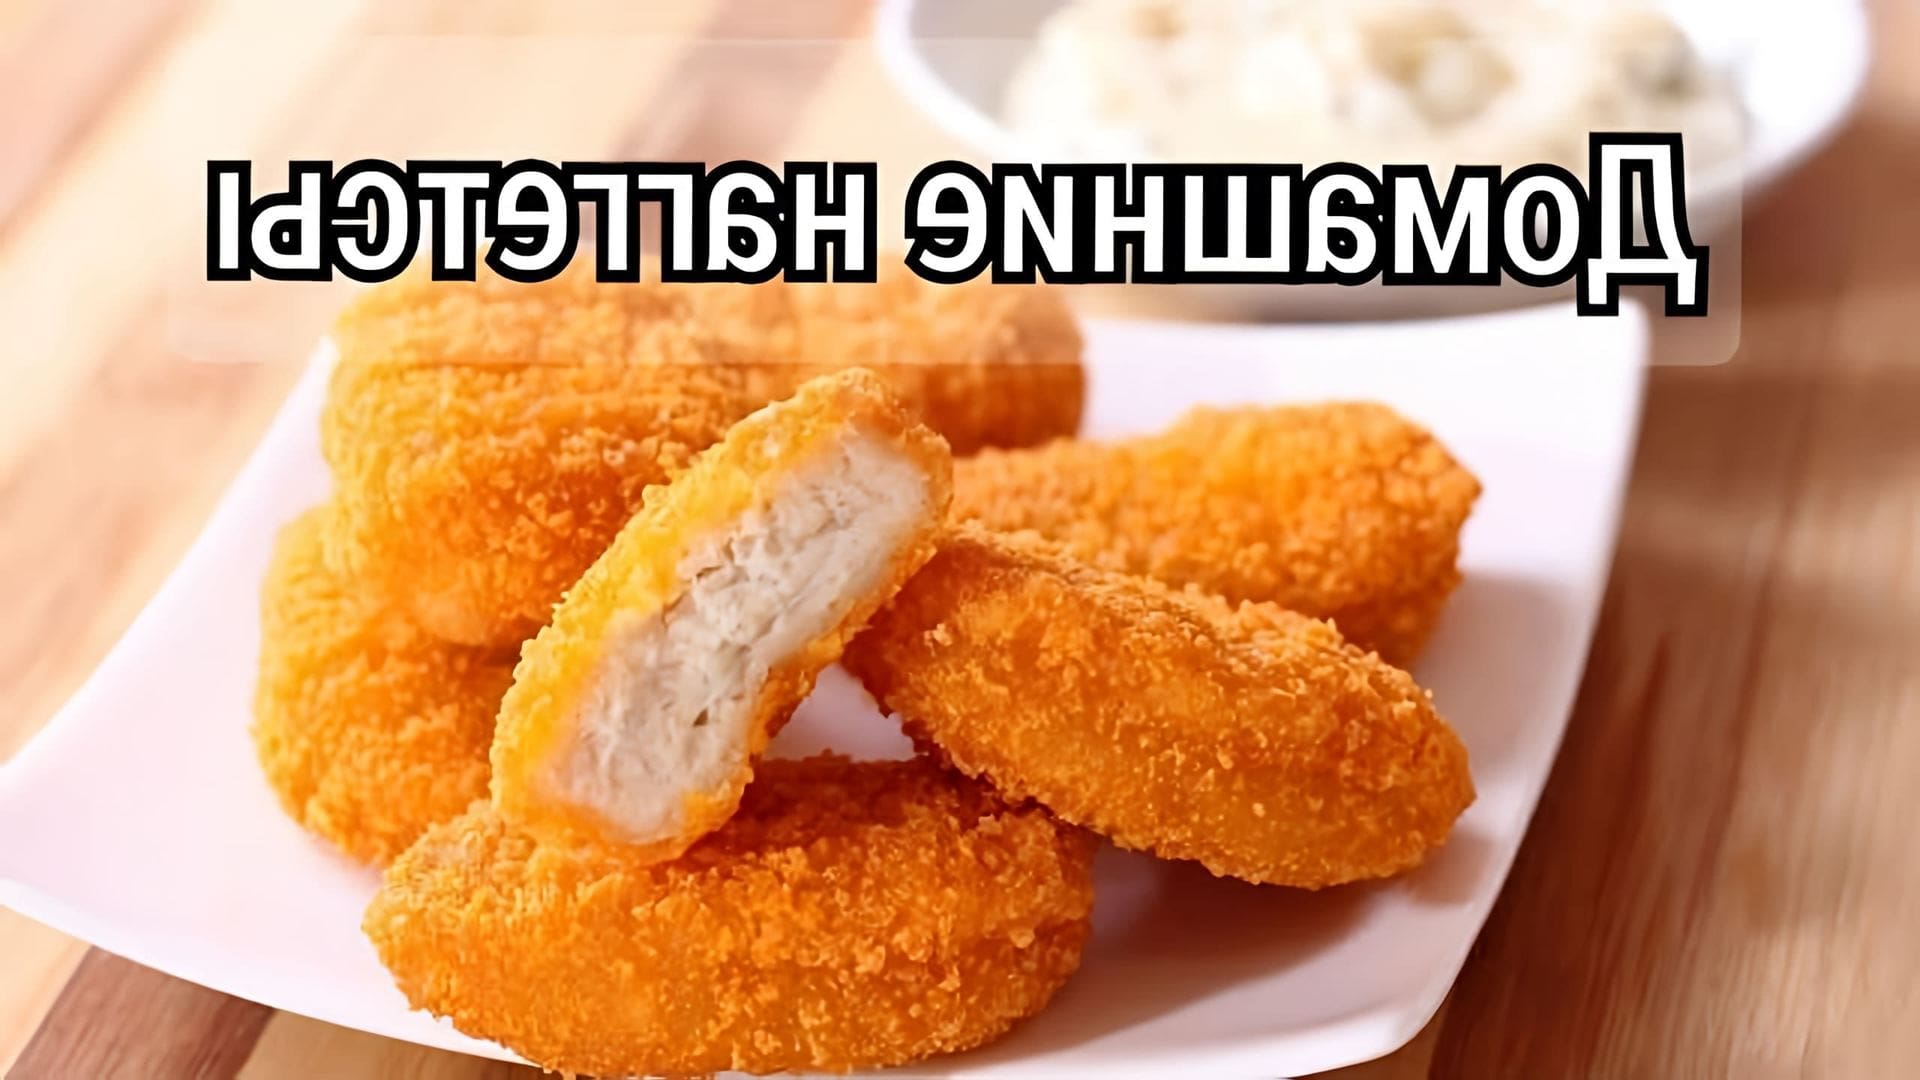 В этом видео-ролике будет показан быстрый и вкусный рецепт домашних наггетсов, которые получаются вкуснее, чем в KFC